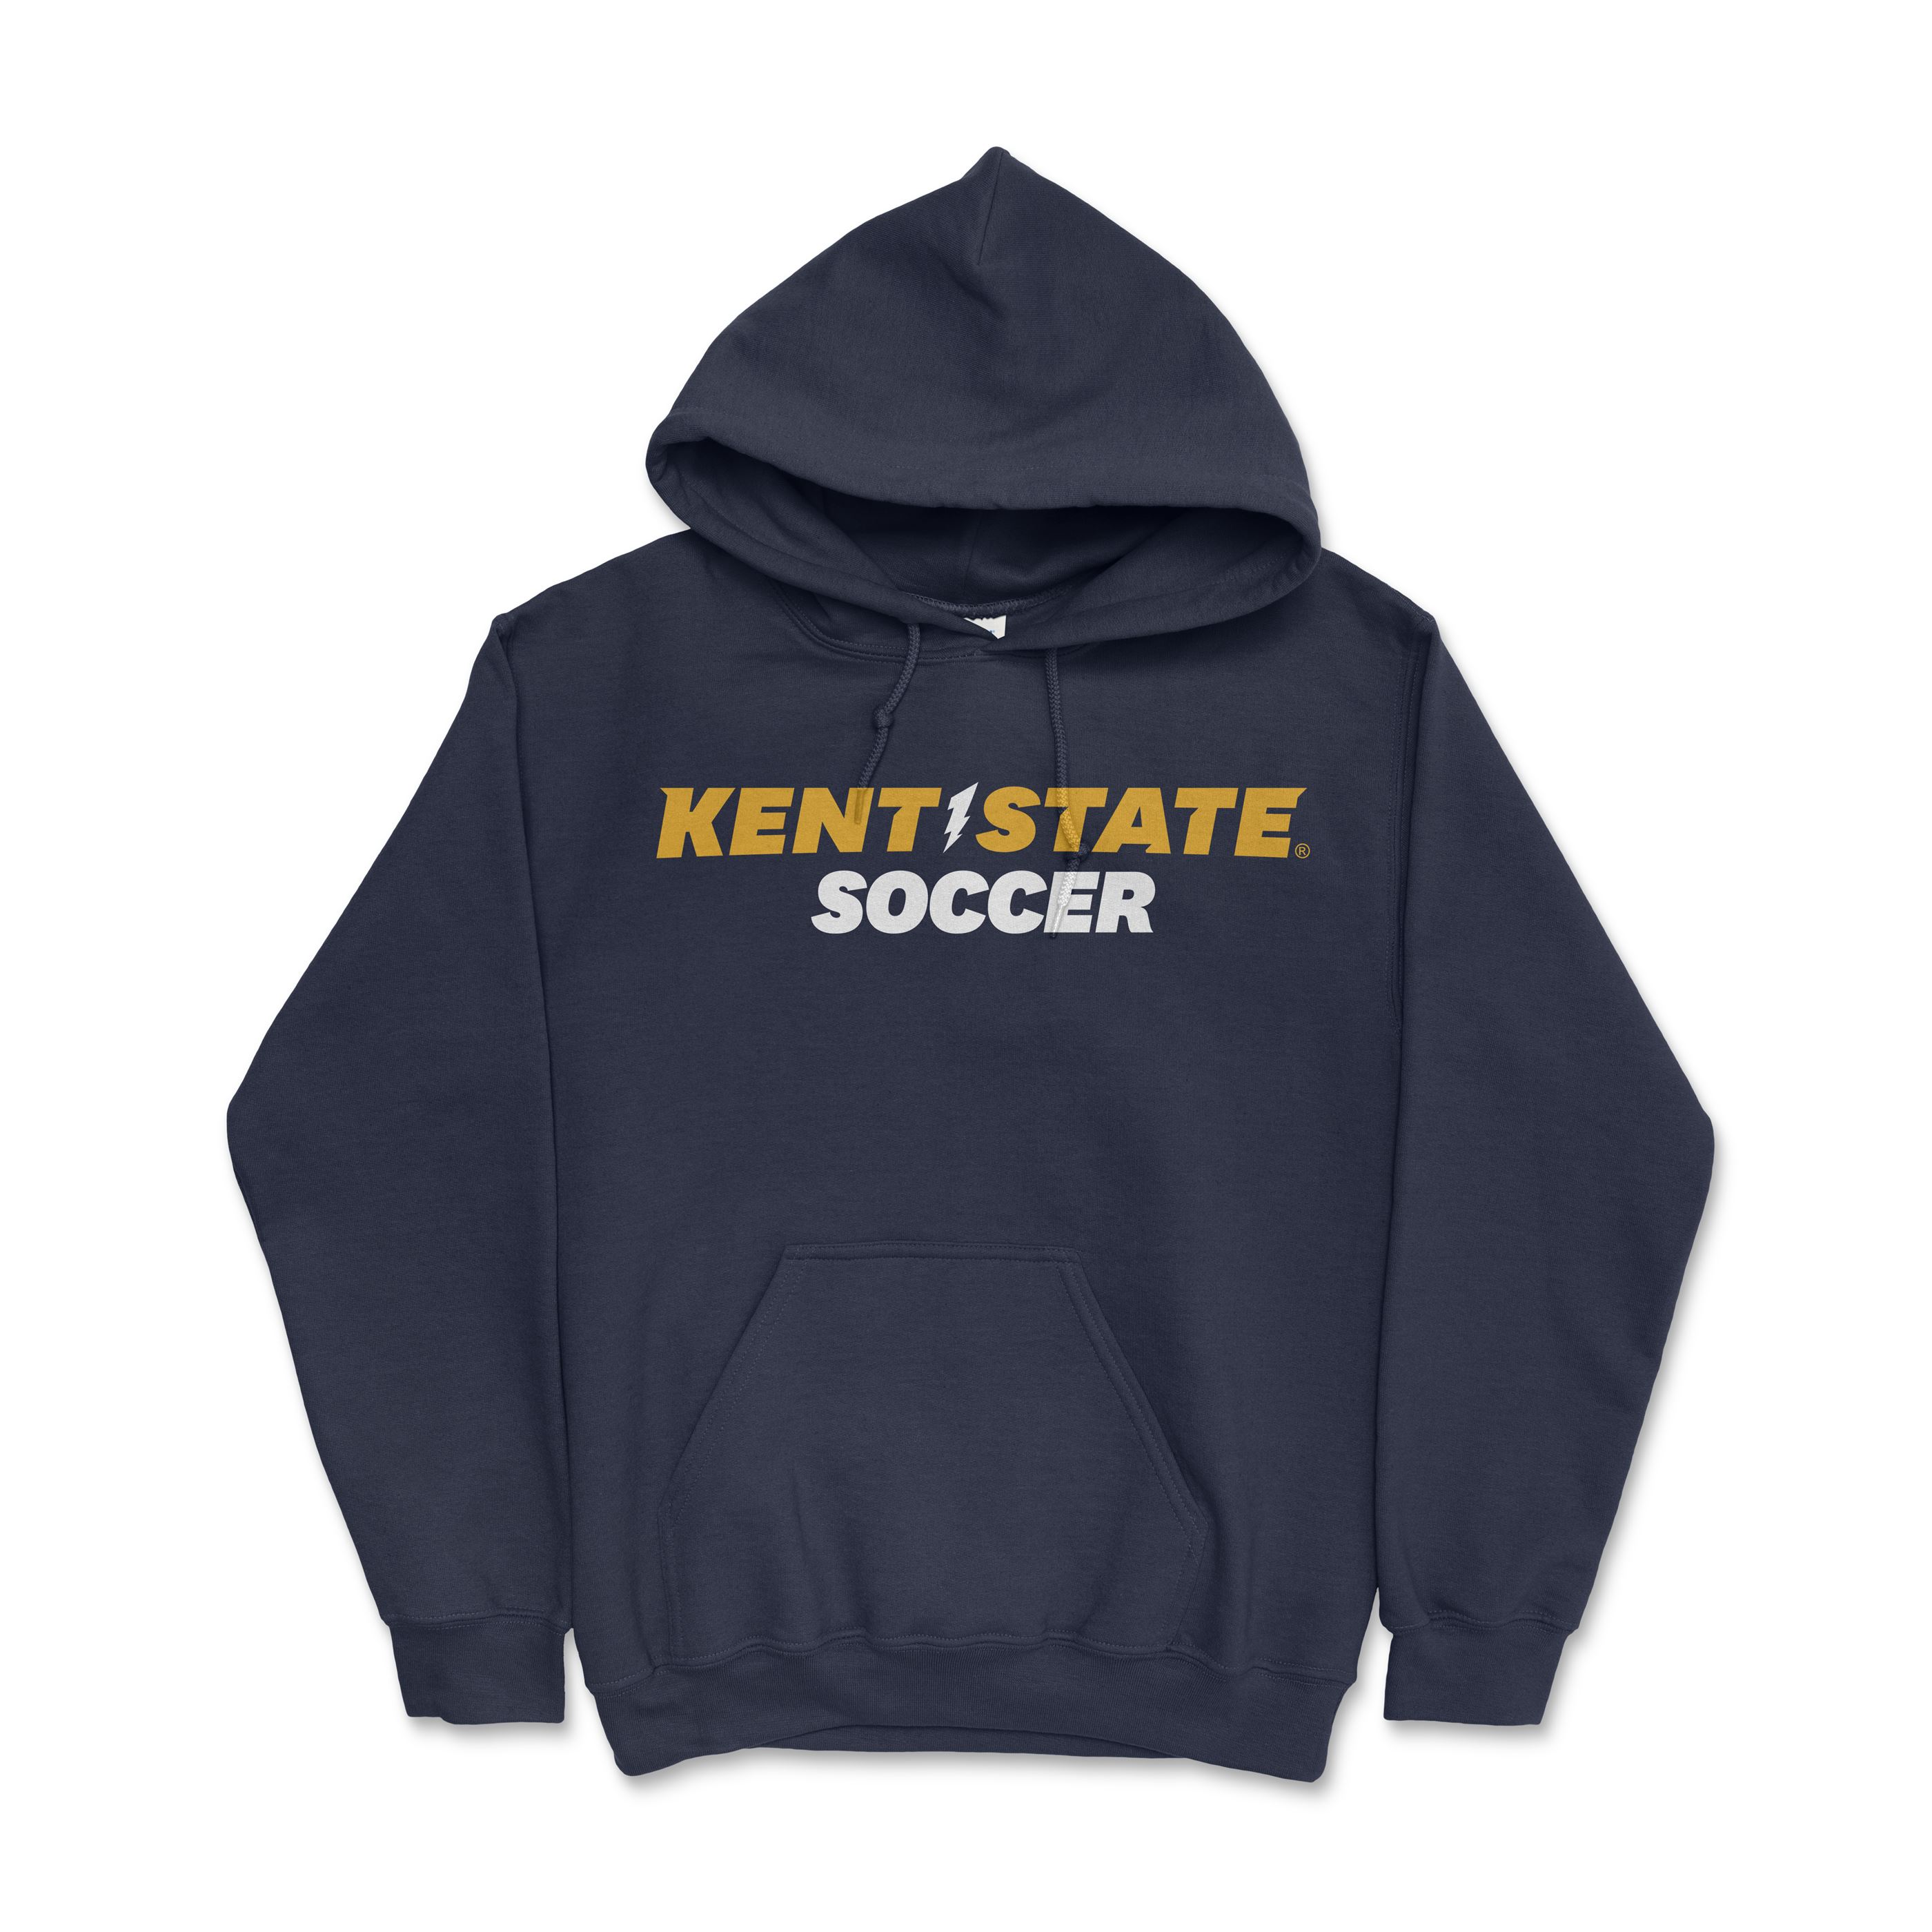 Kent State Navy Soccer Hoodie